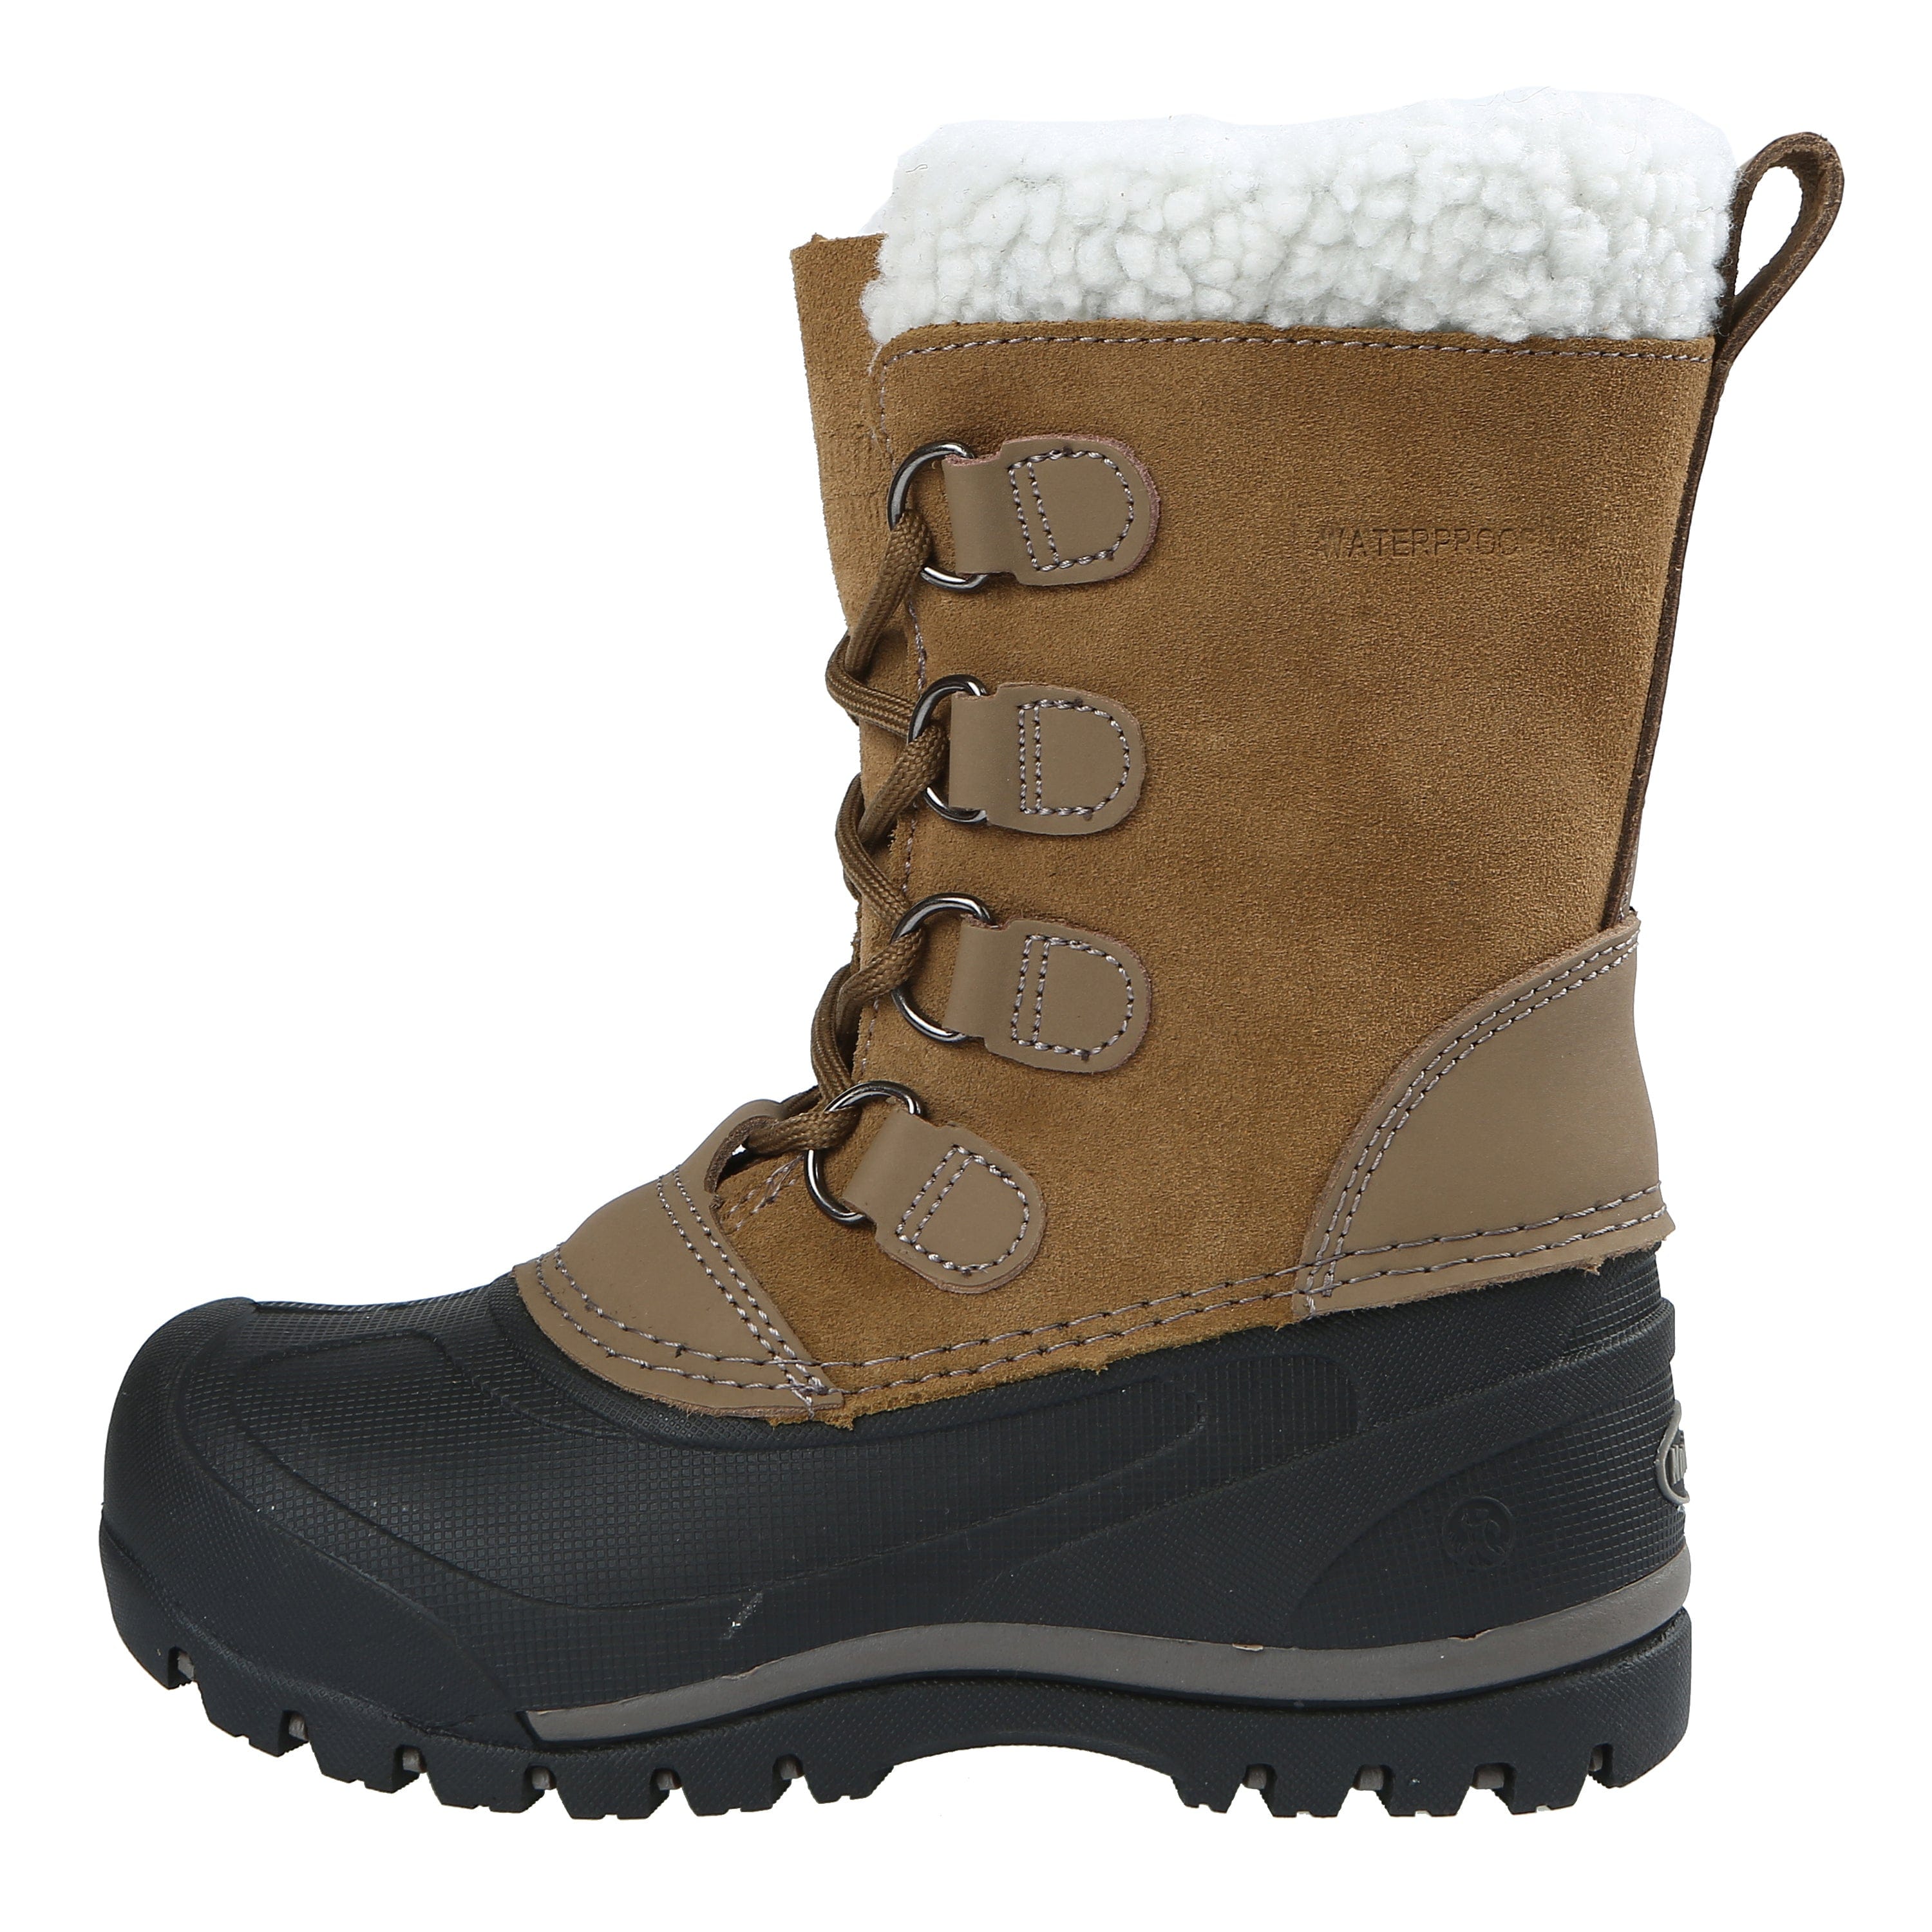 verhouding fluiten Regenjas Back Country Waterproof Insulated Leather Winter Snow Boot